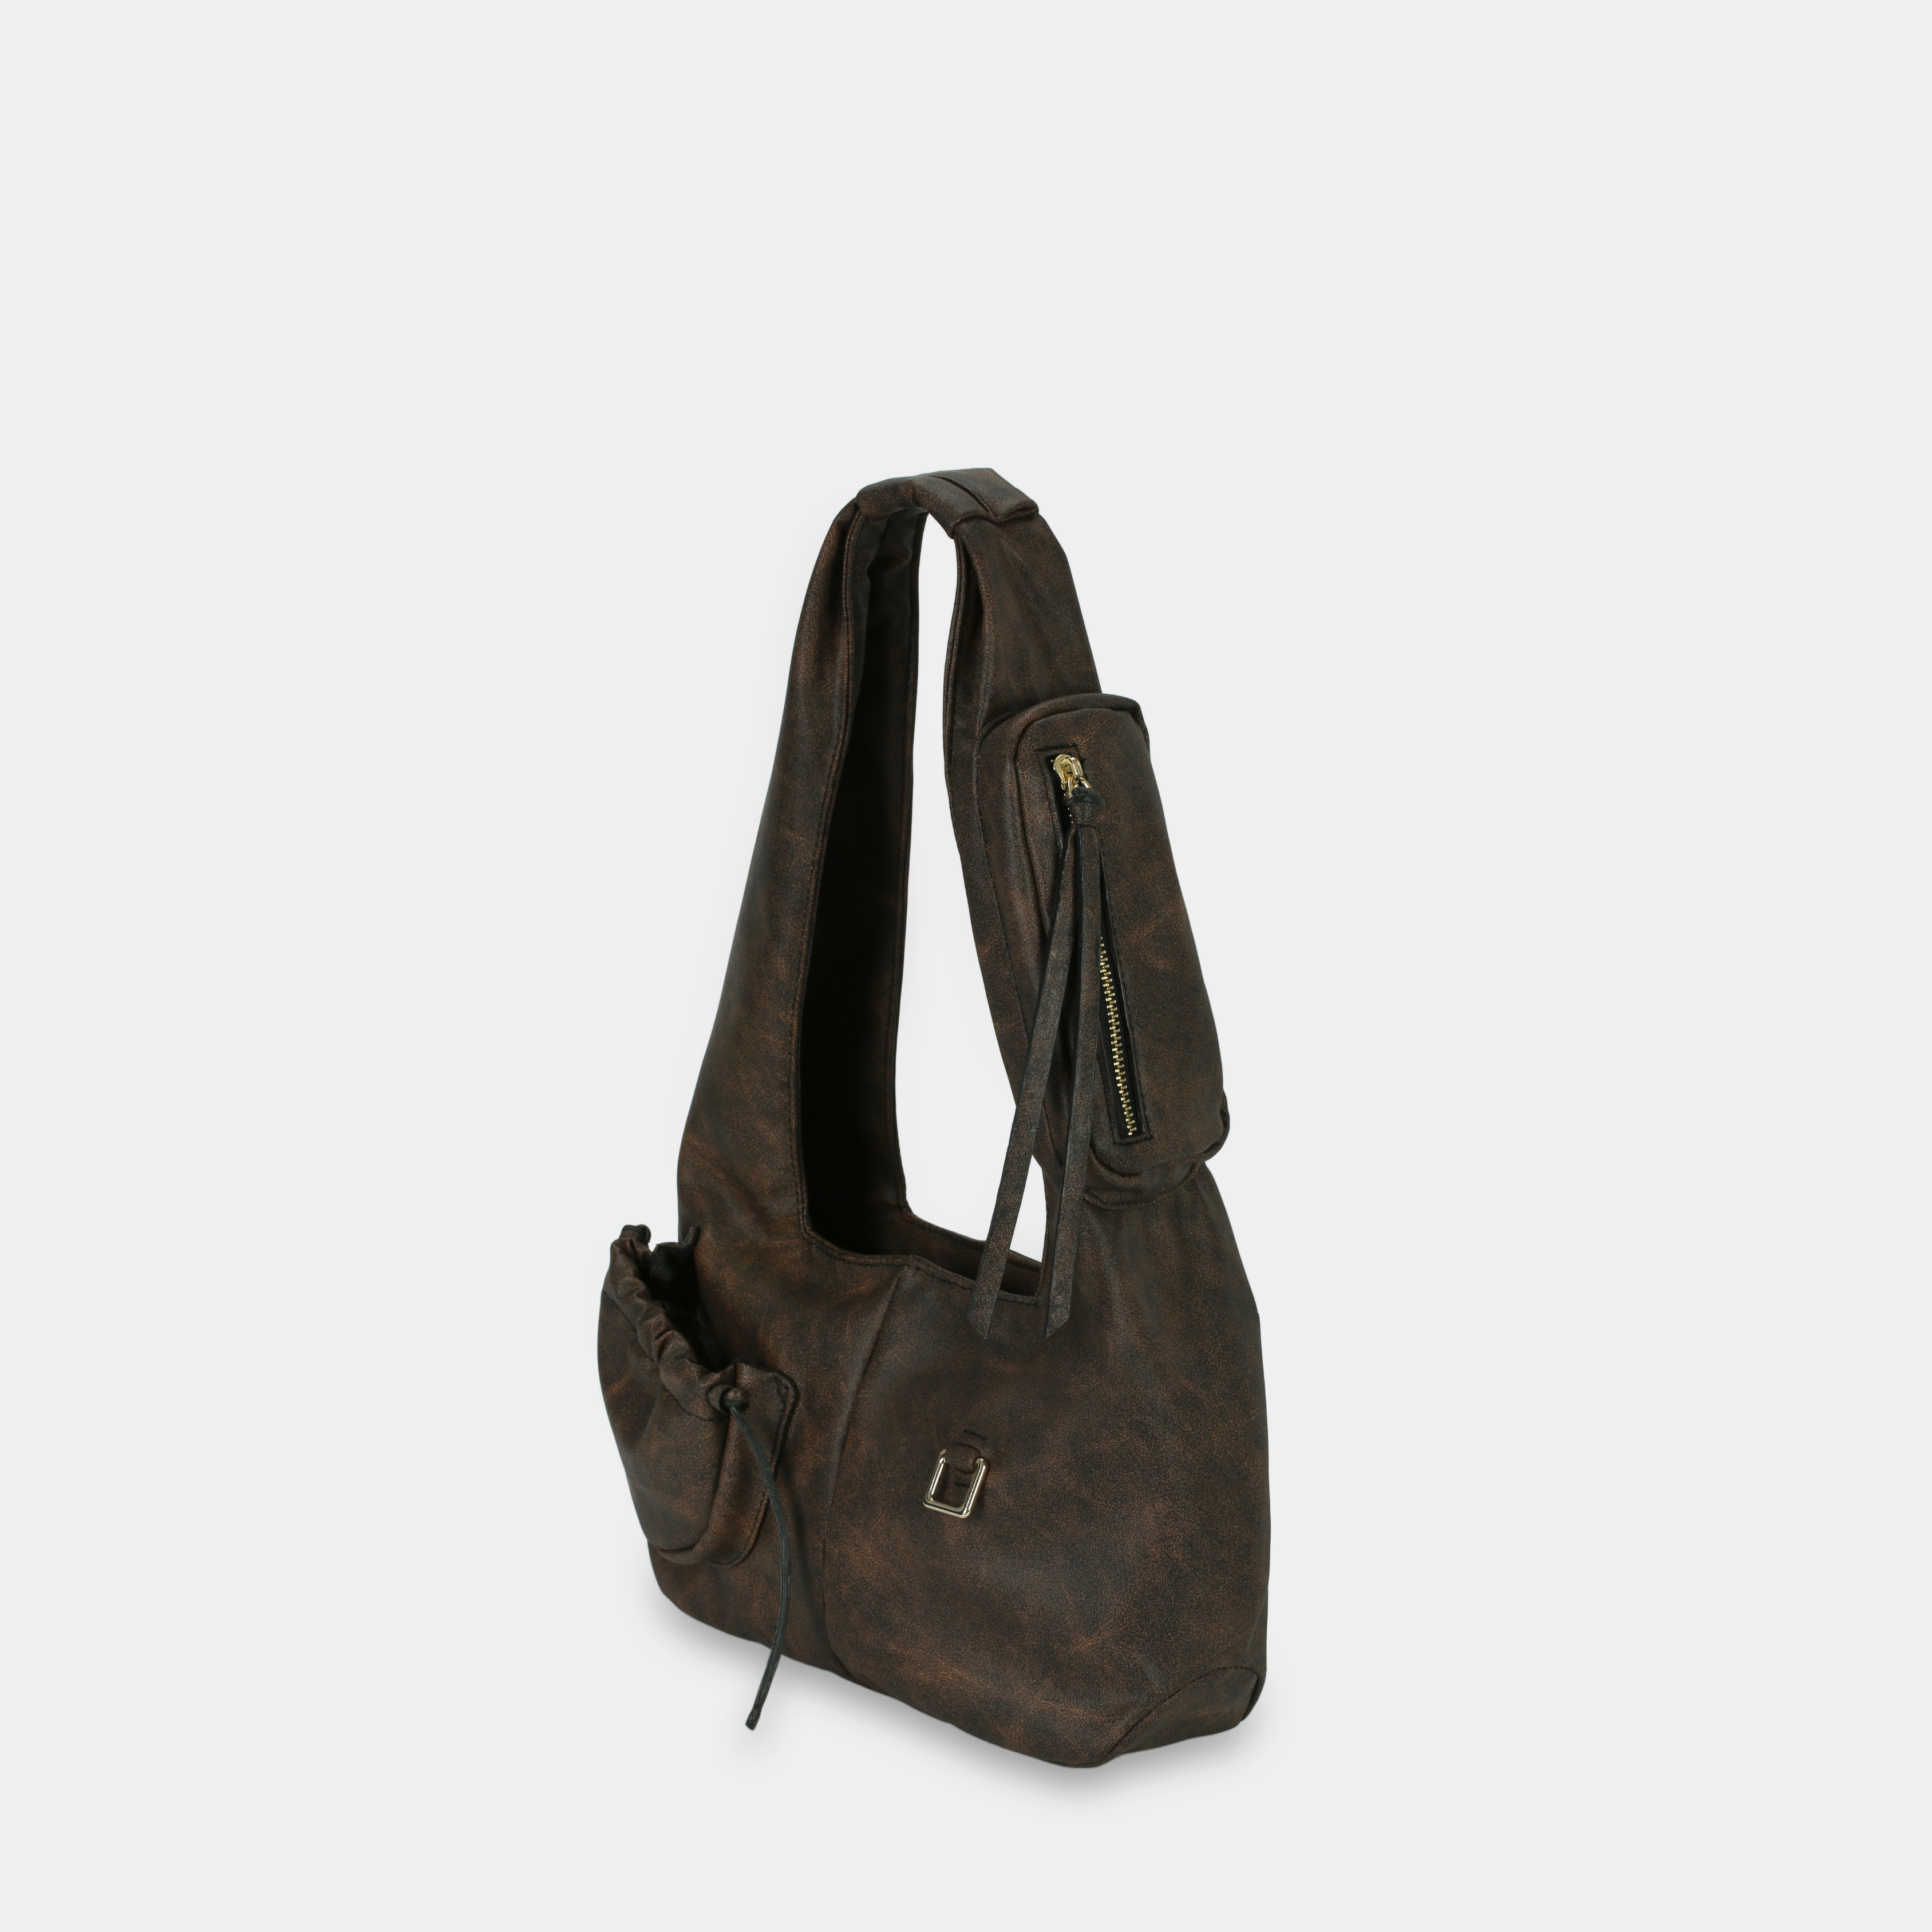 Túi xách Hobo C2-Pocket size Medium (M) màu nâu đen chấm